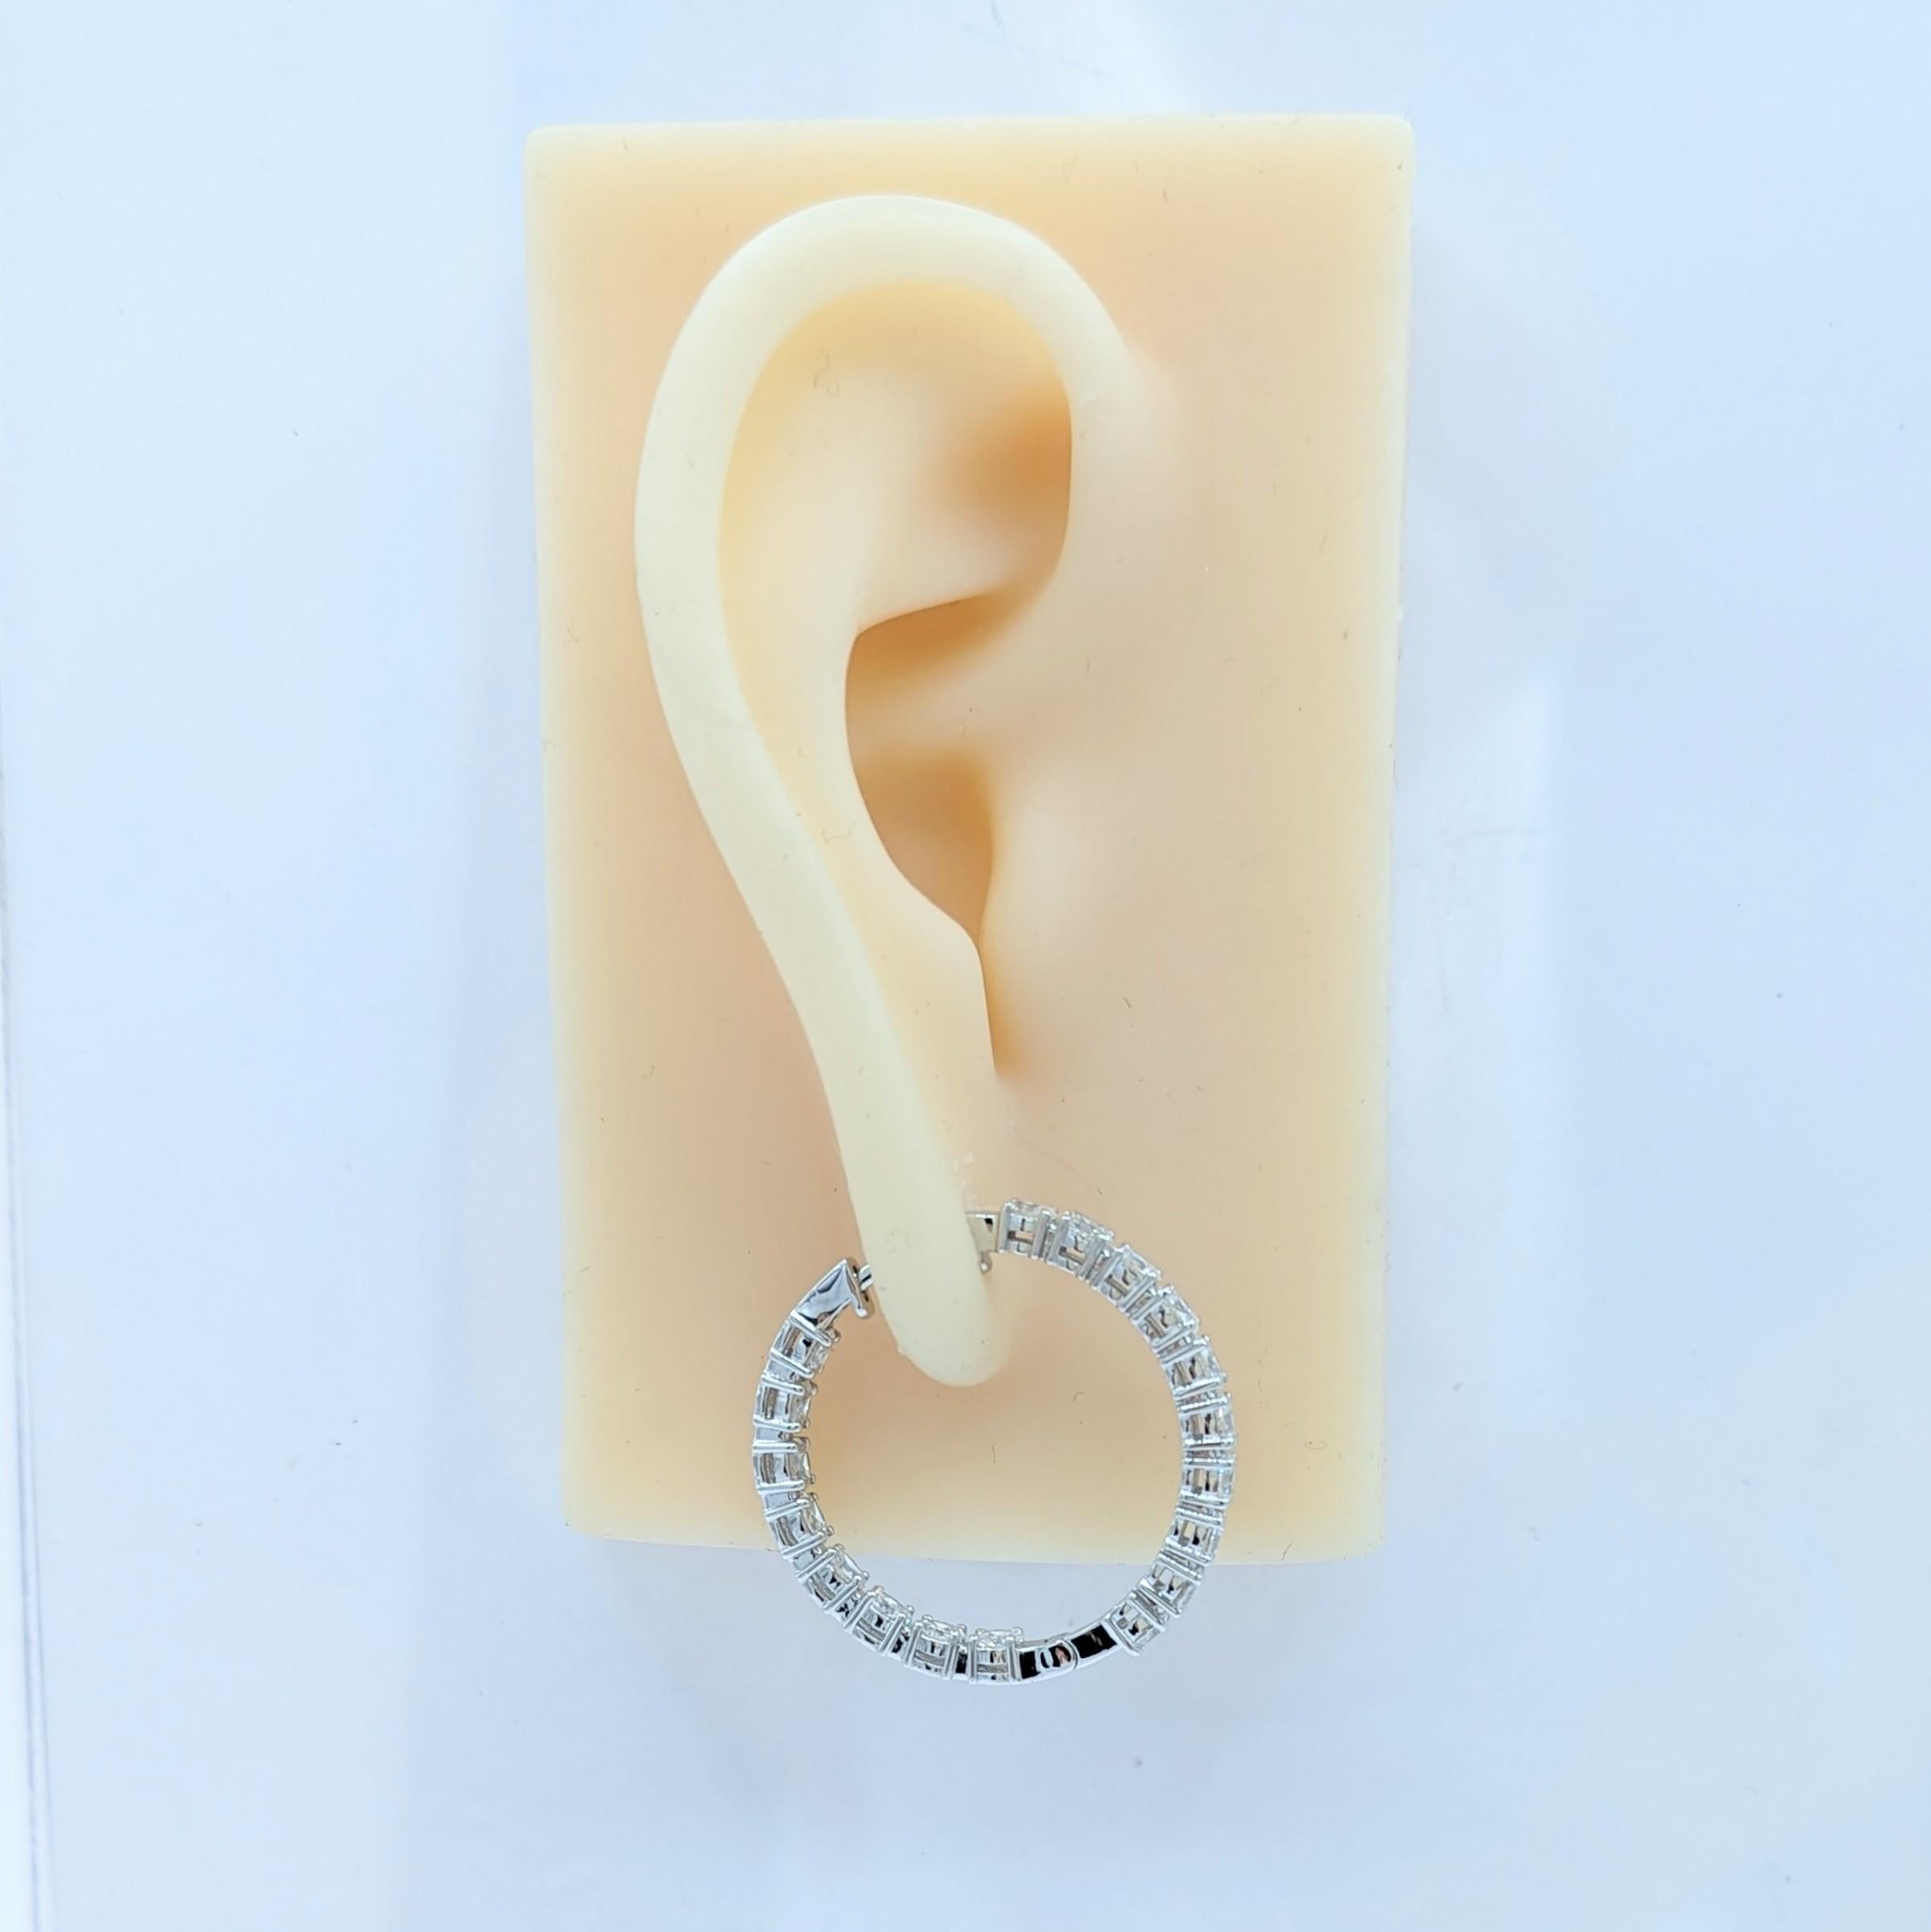 Magnifiques ovales de diamants blancs de 3,18 ct. (total de 36 pierres) faits à la main en or blanc 18k.  Ces boucles d'oreilles sont un classique qui devrait figurer dans la collection de bijoux de chacun !